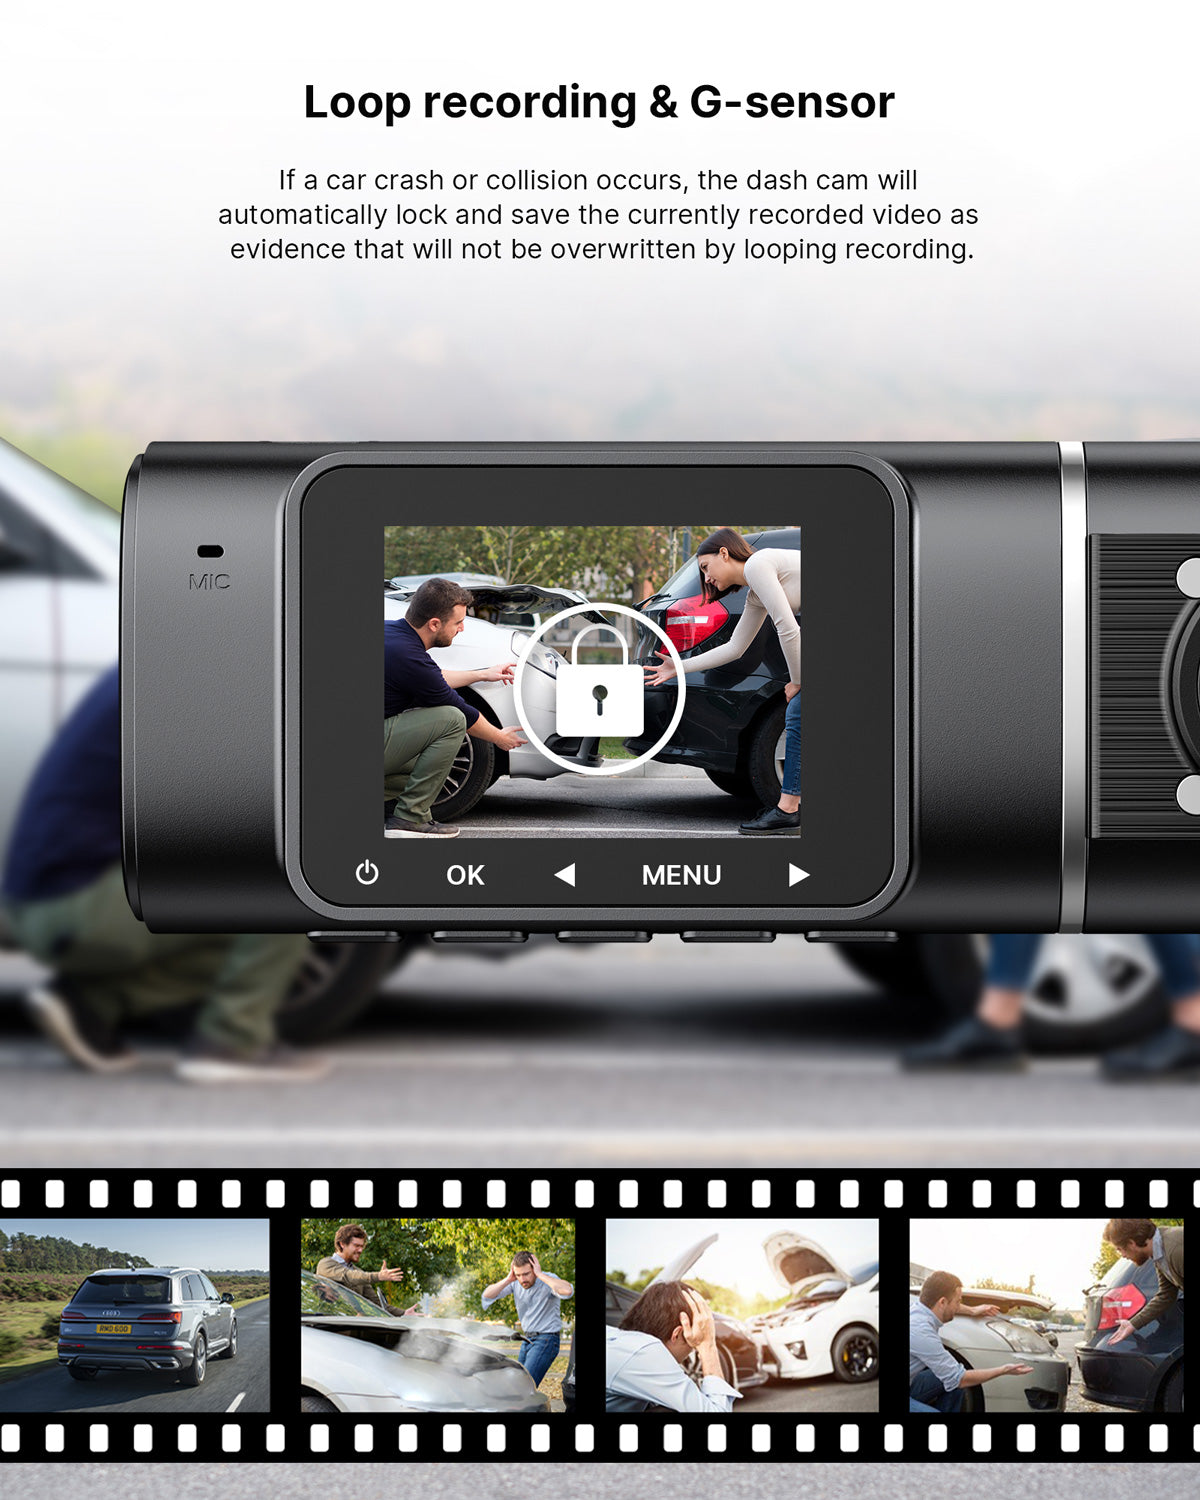 Campark C300 1.5” 3 Channel Front & Inside & Rear(1080P+720P+720P) Dash Cam